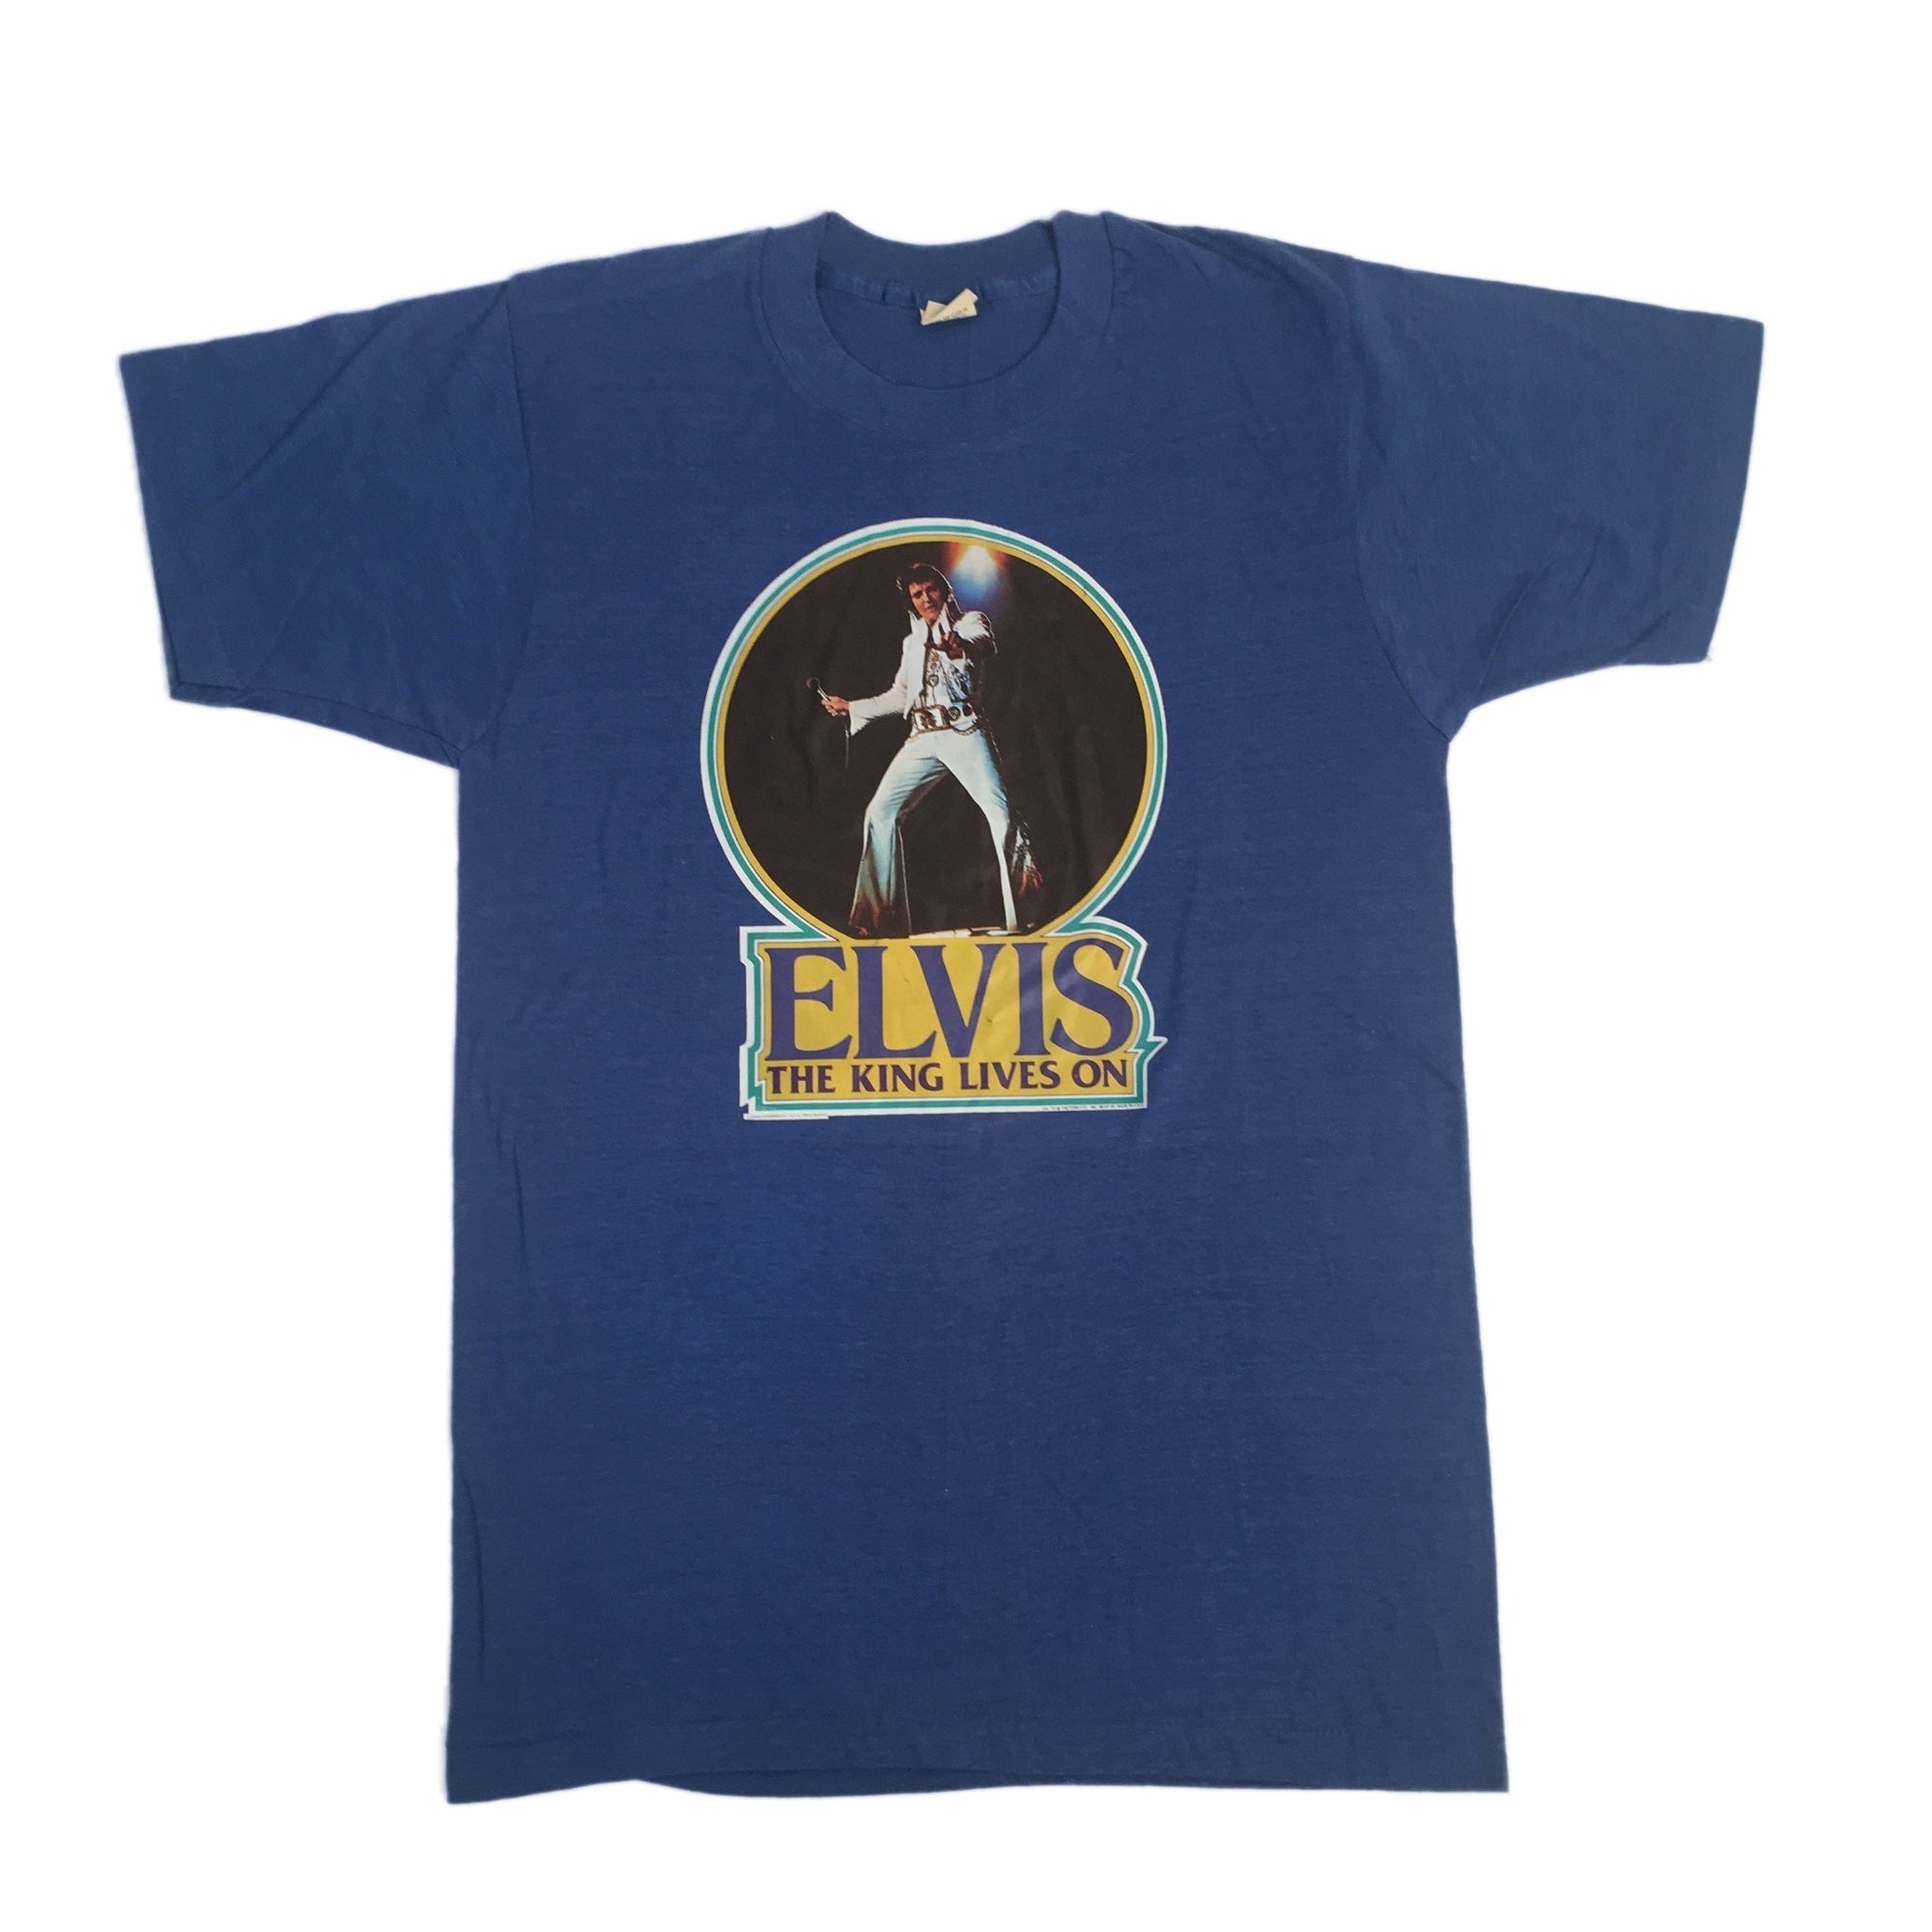 Vintage Elvis Presley "The King Lives On" T-Shirt - jointcustodydc